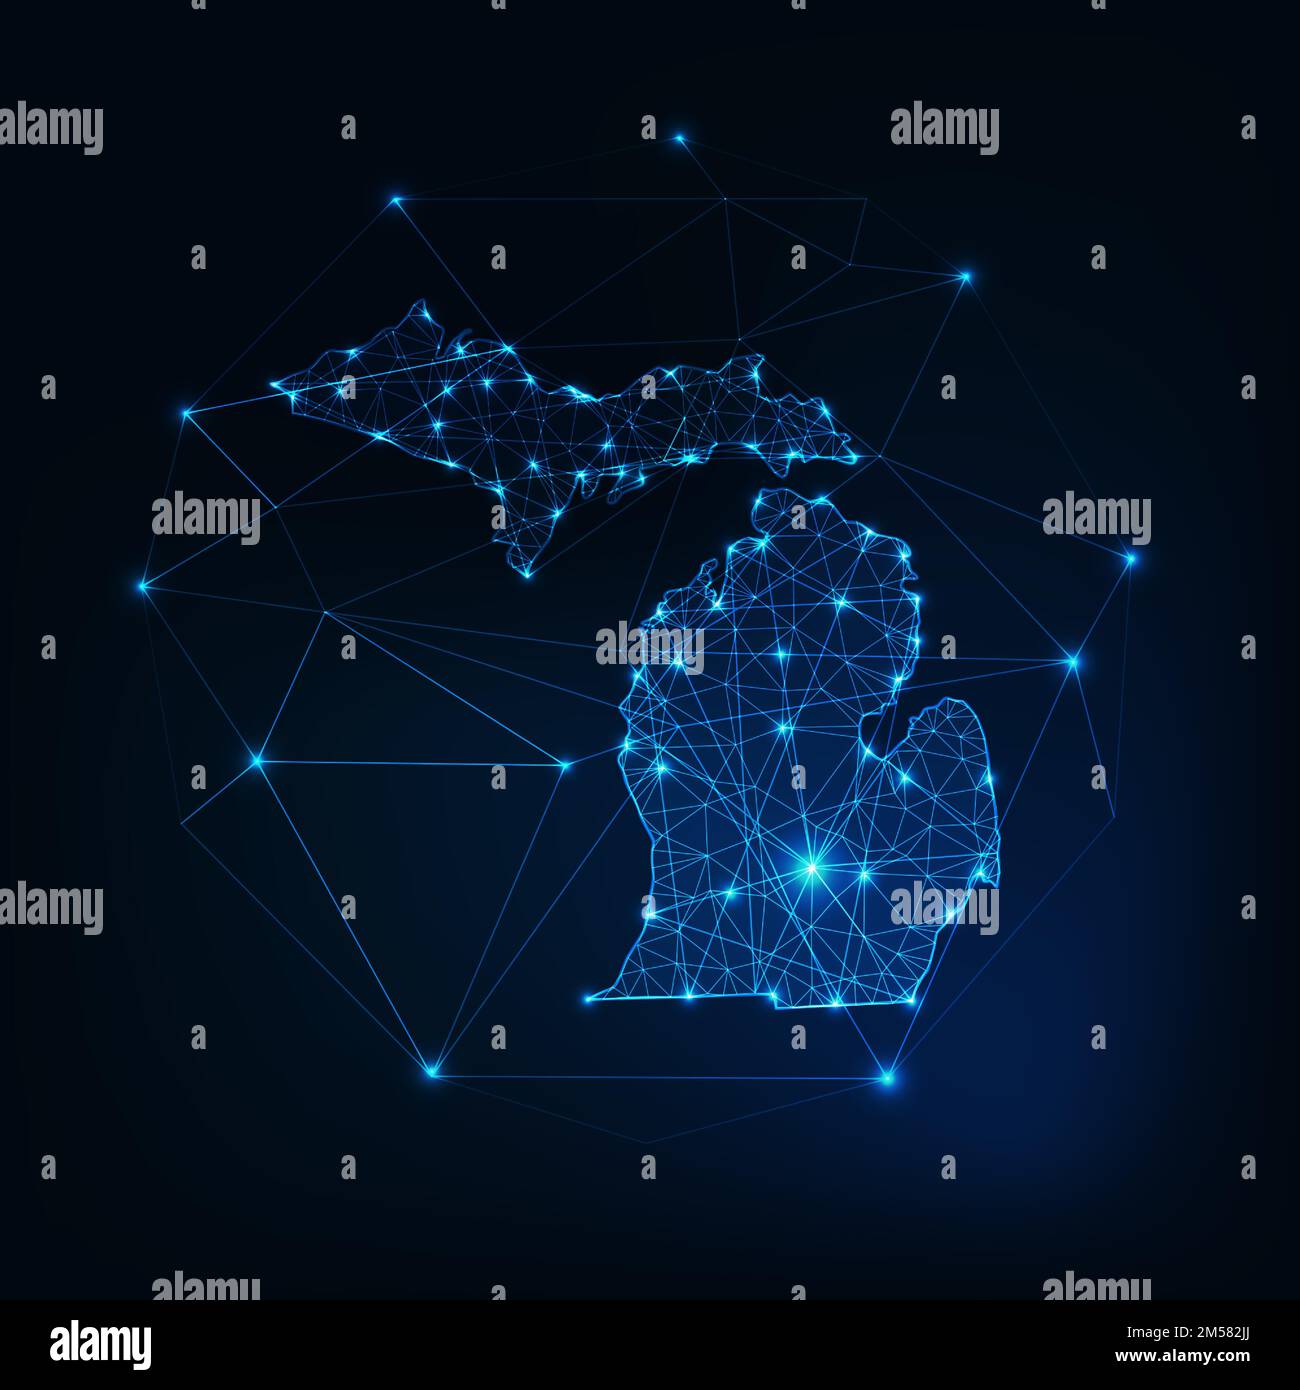 Der Bundesstaat Michigan, USA, hat eine glühende Silhouette aus Sternenlinien, Dreiecken und niedrigen polygonalen Formen. Kommunikation, Internet-Technologie-Konzept. W Stock Vektor